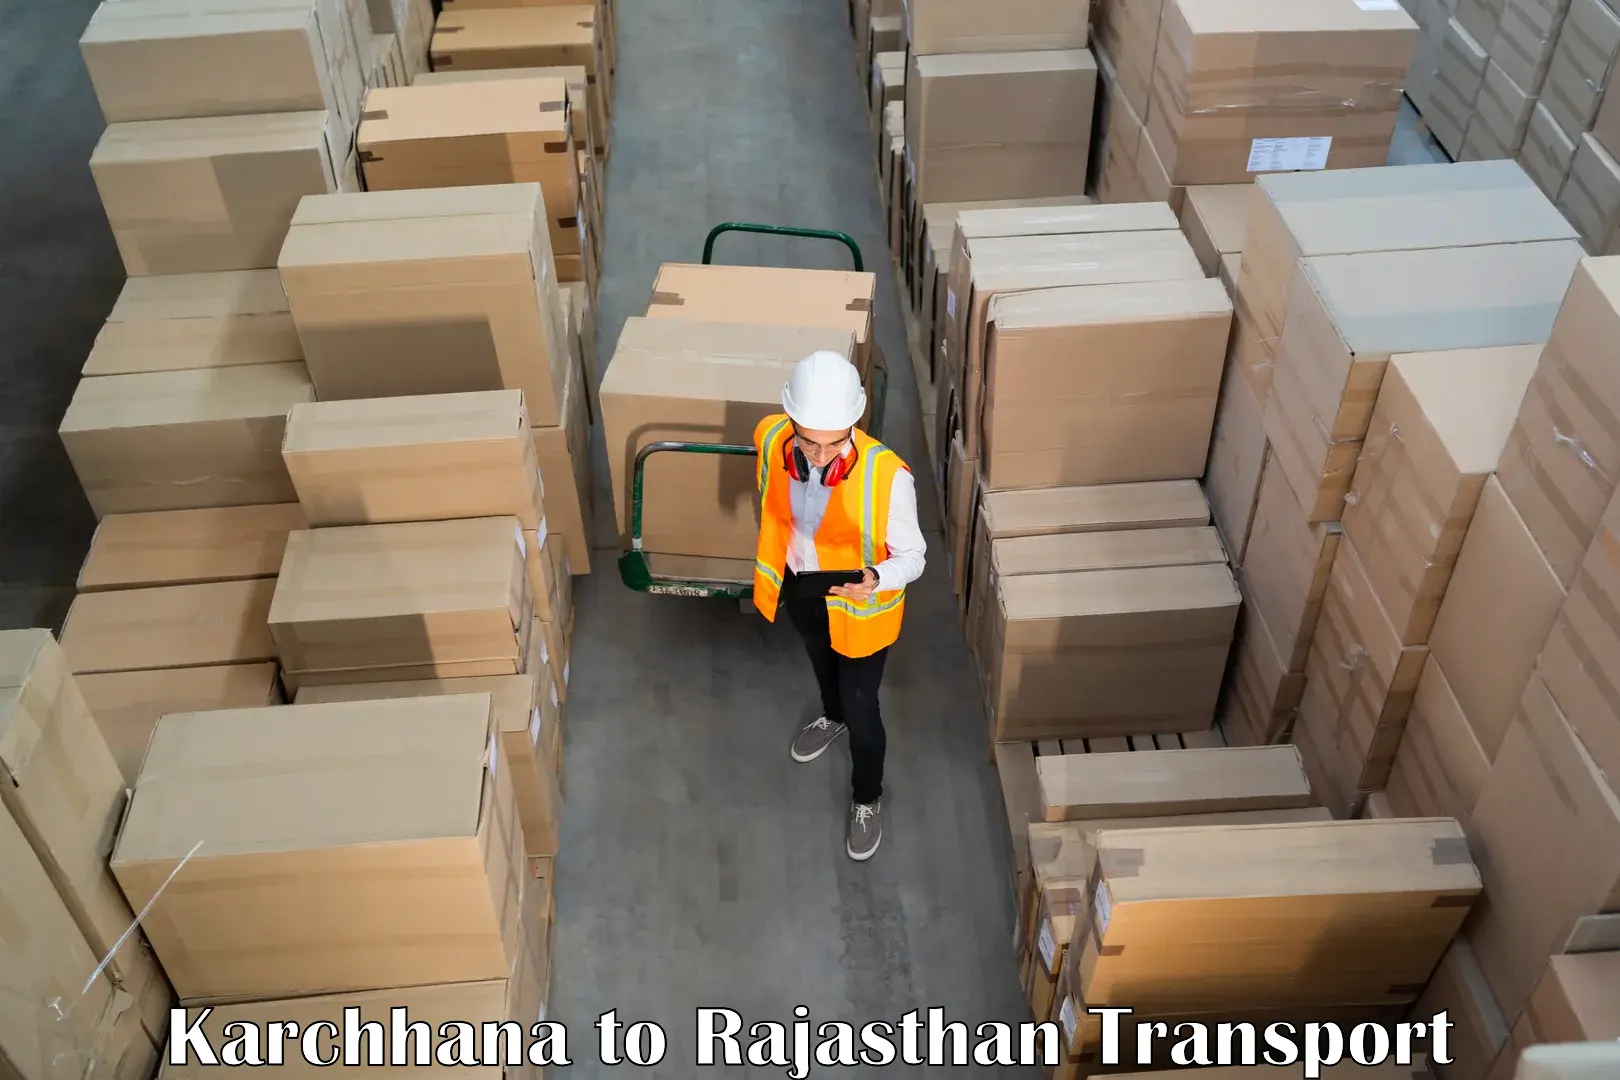 Shipping partner Karchhana to Rajasthan